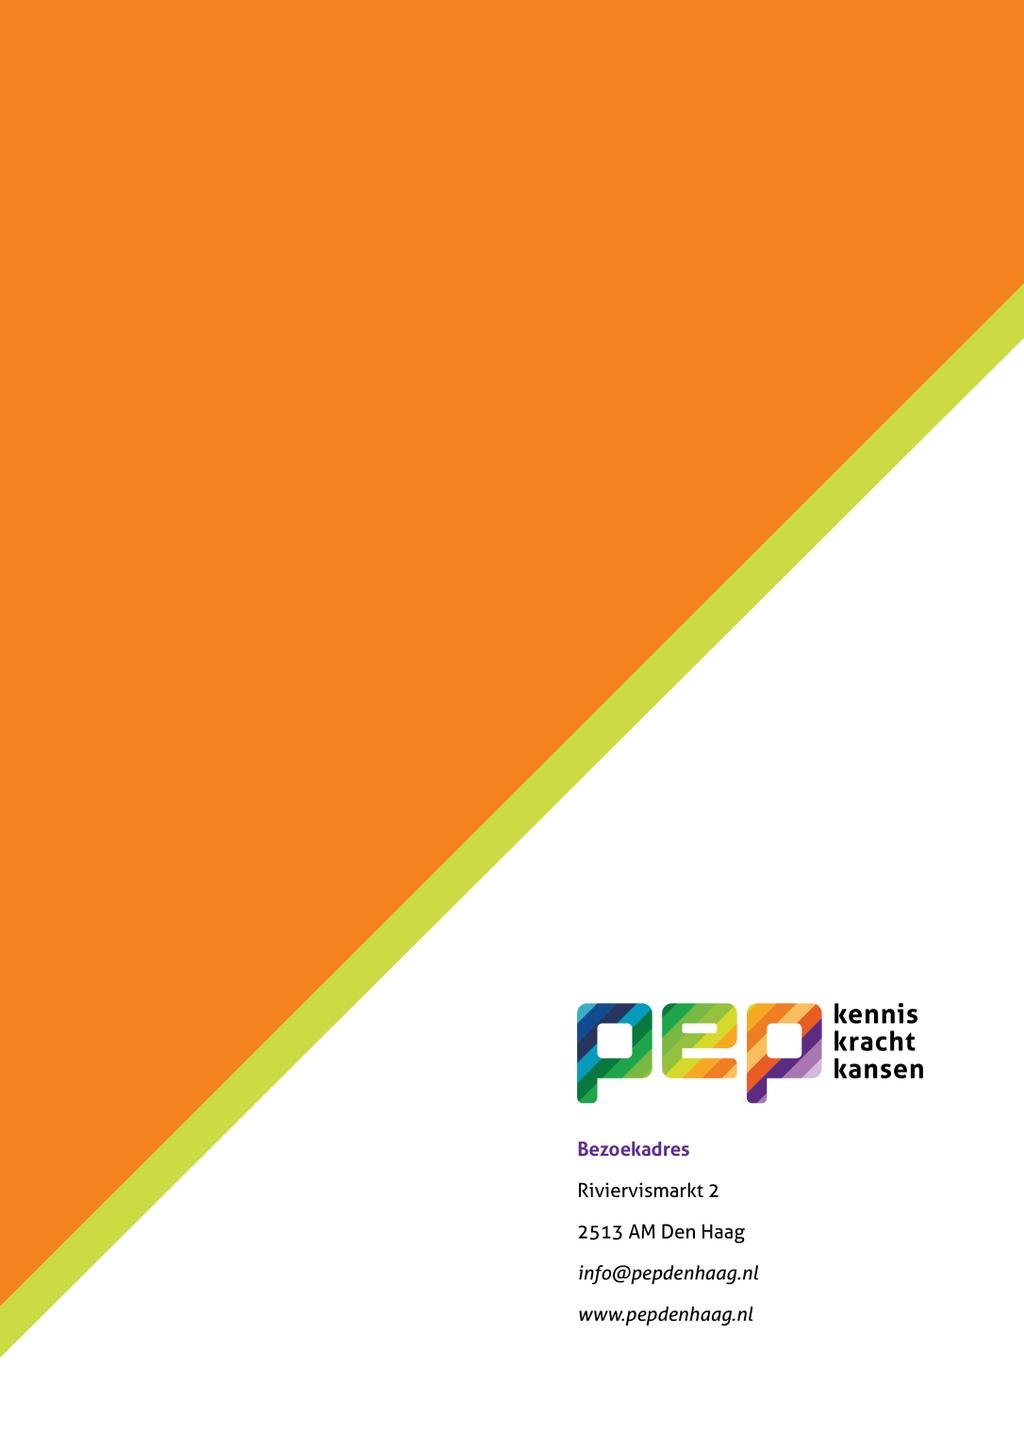 PEP in het kort PEP staat voor Participatie Emancipatie Professionals en is het kenniscentrum voor maatschappelijke organisaties in Den Haag. PEP doet onderzoek, verbindt, adviseert en traint.